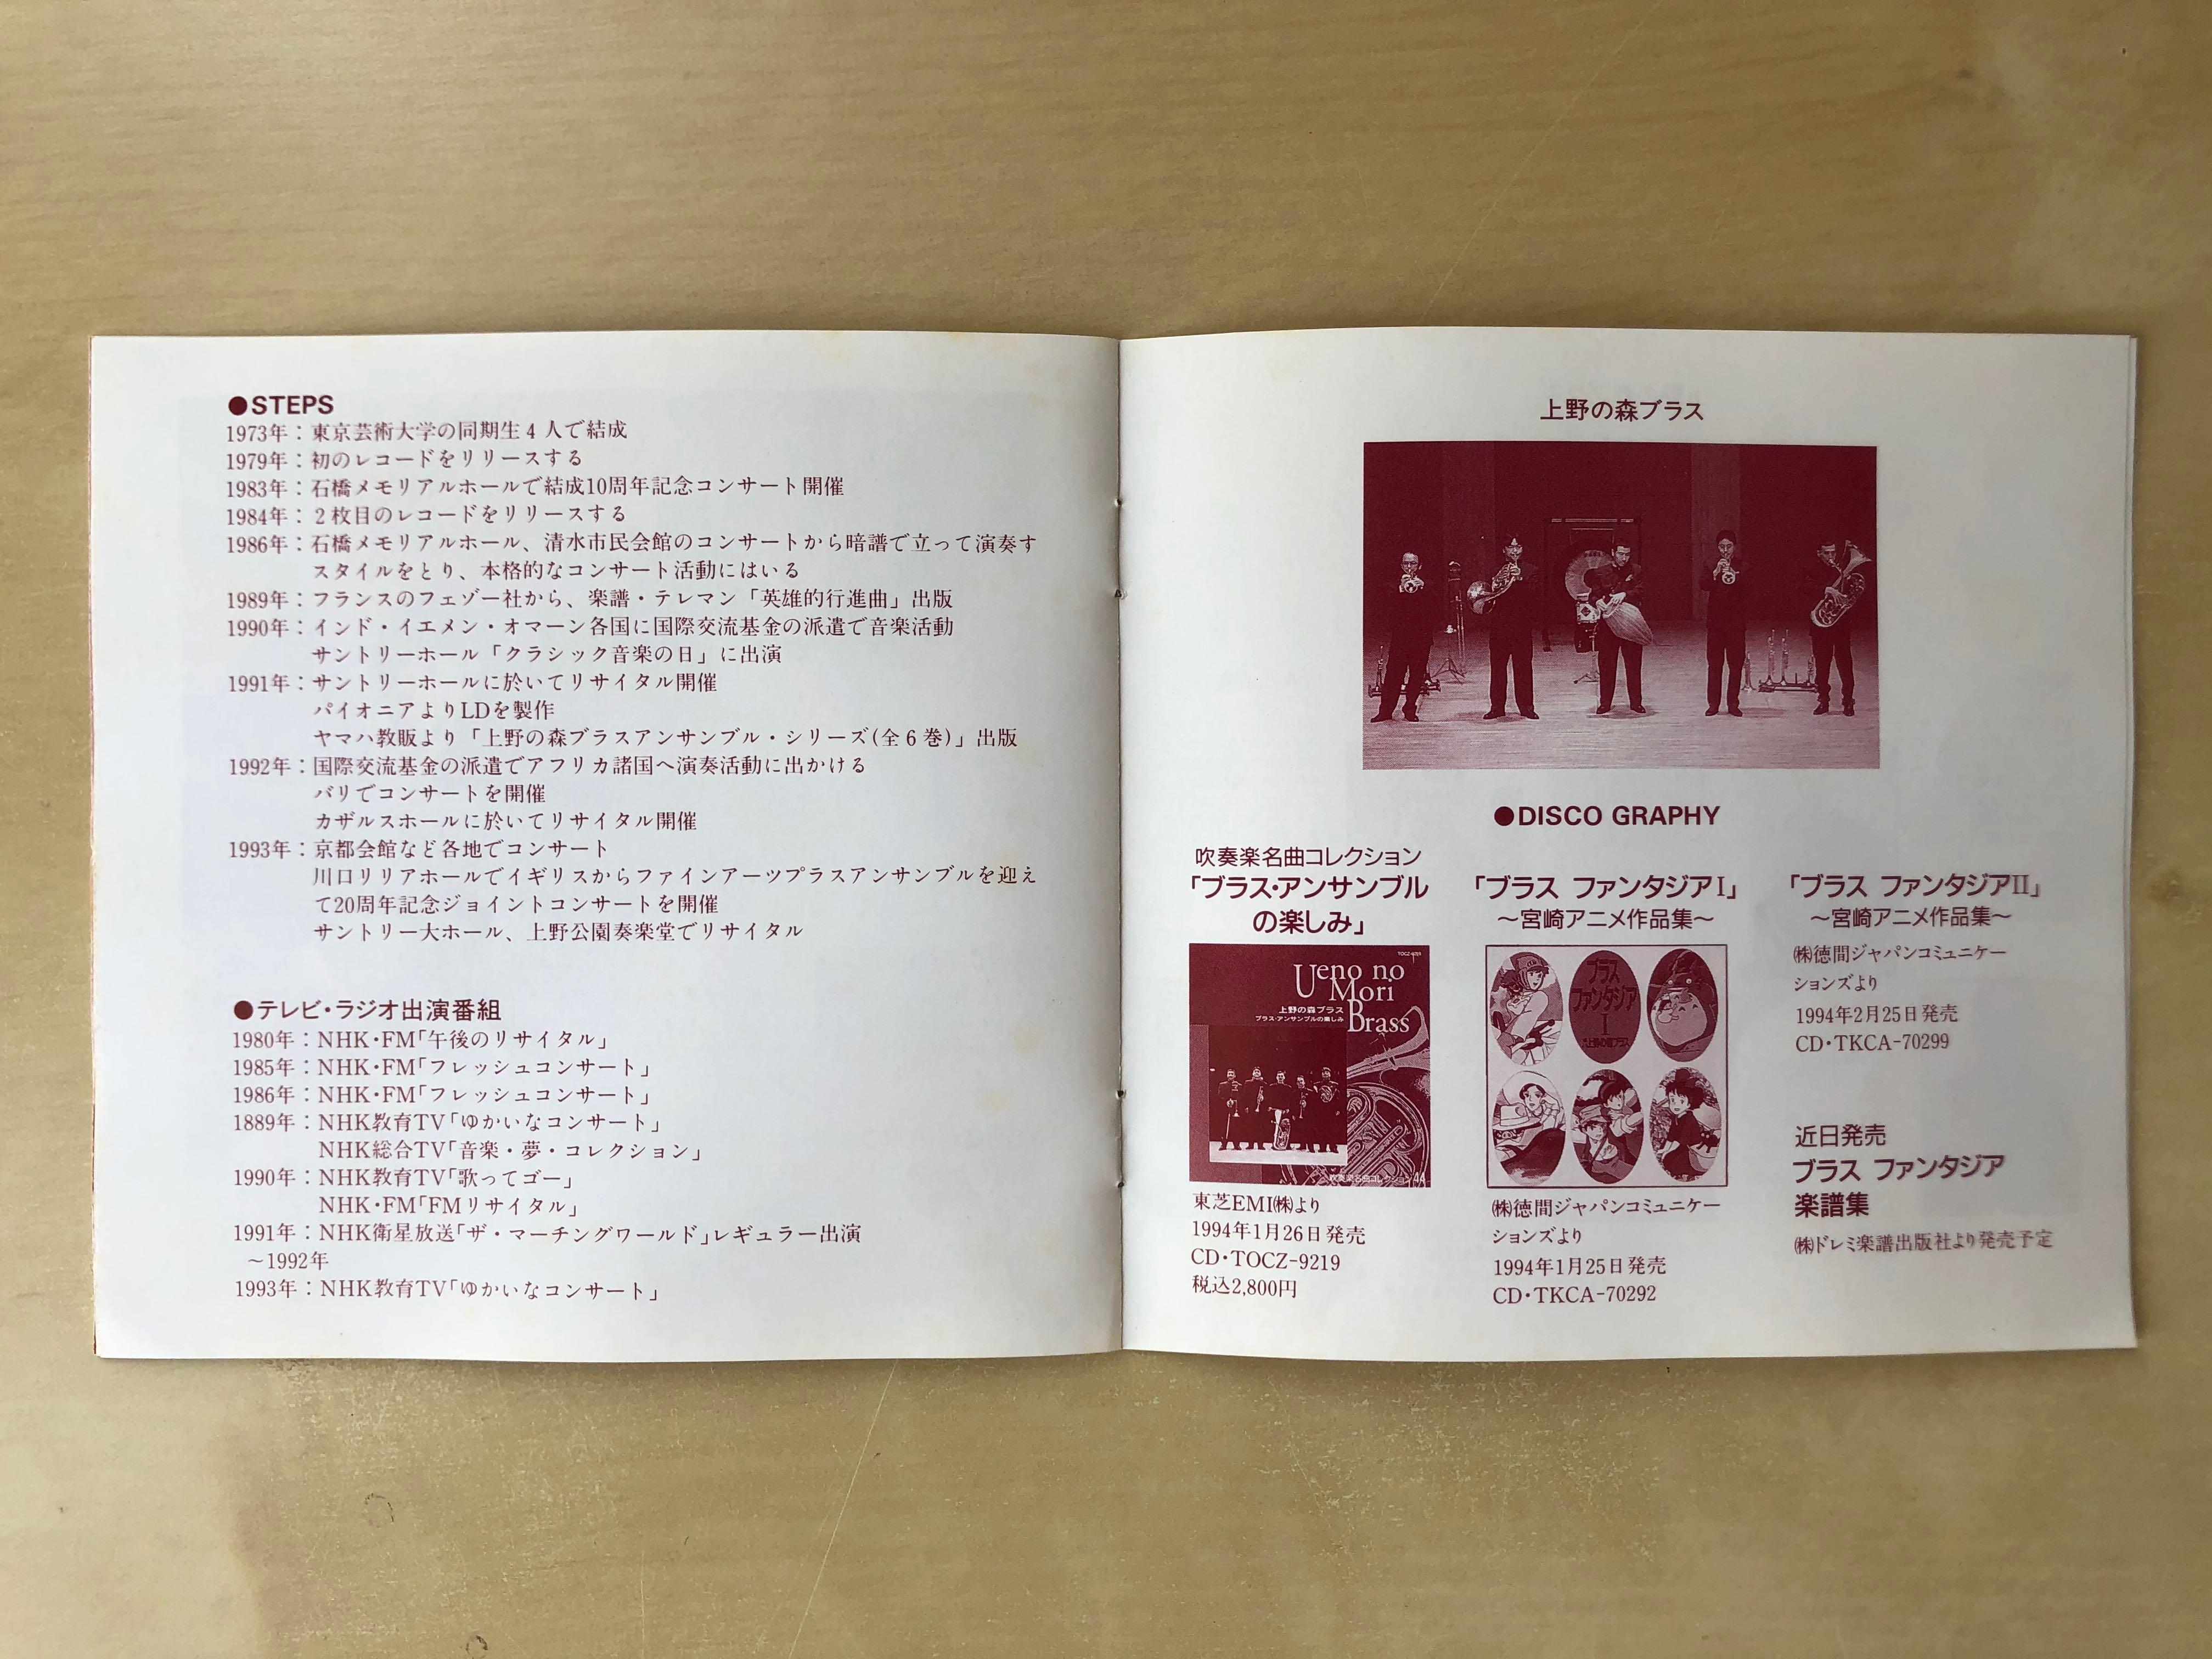 CD丨上野の森ブラスブラスファンタジア2 宮崎アニメ作品集Brass